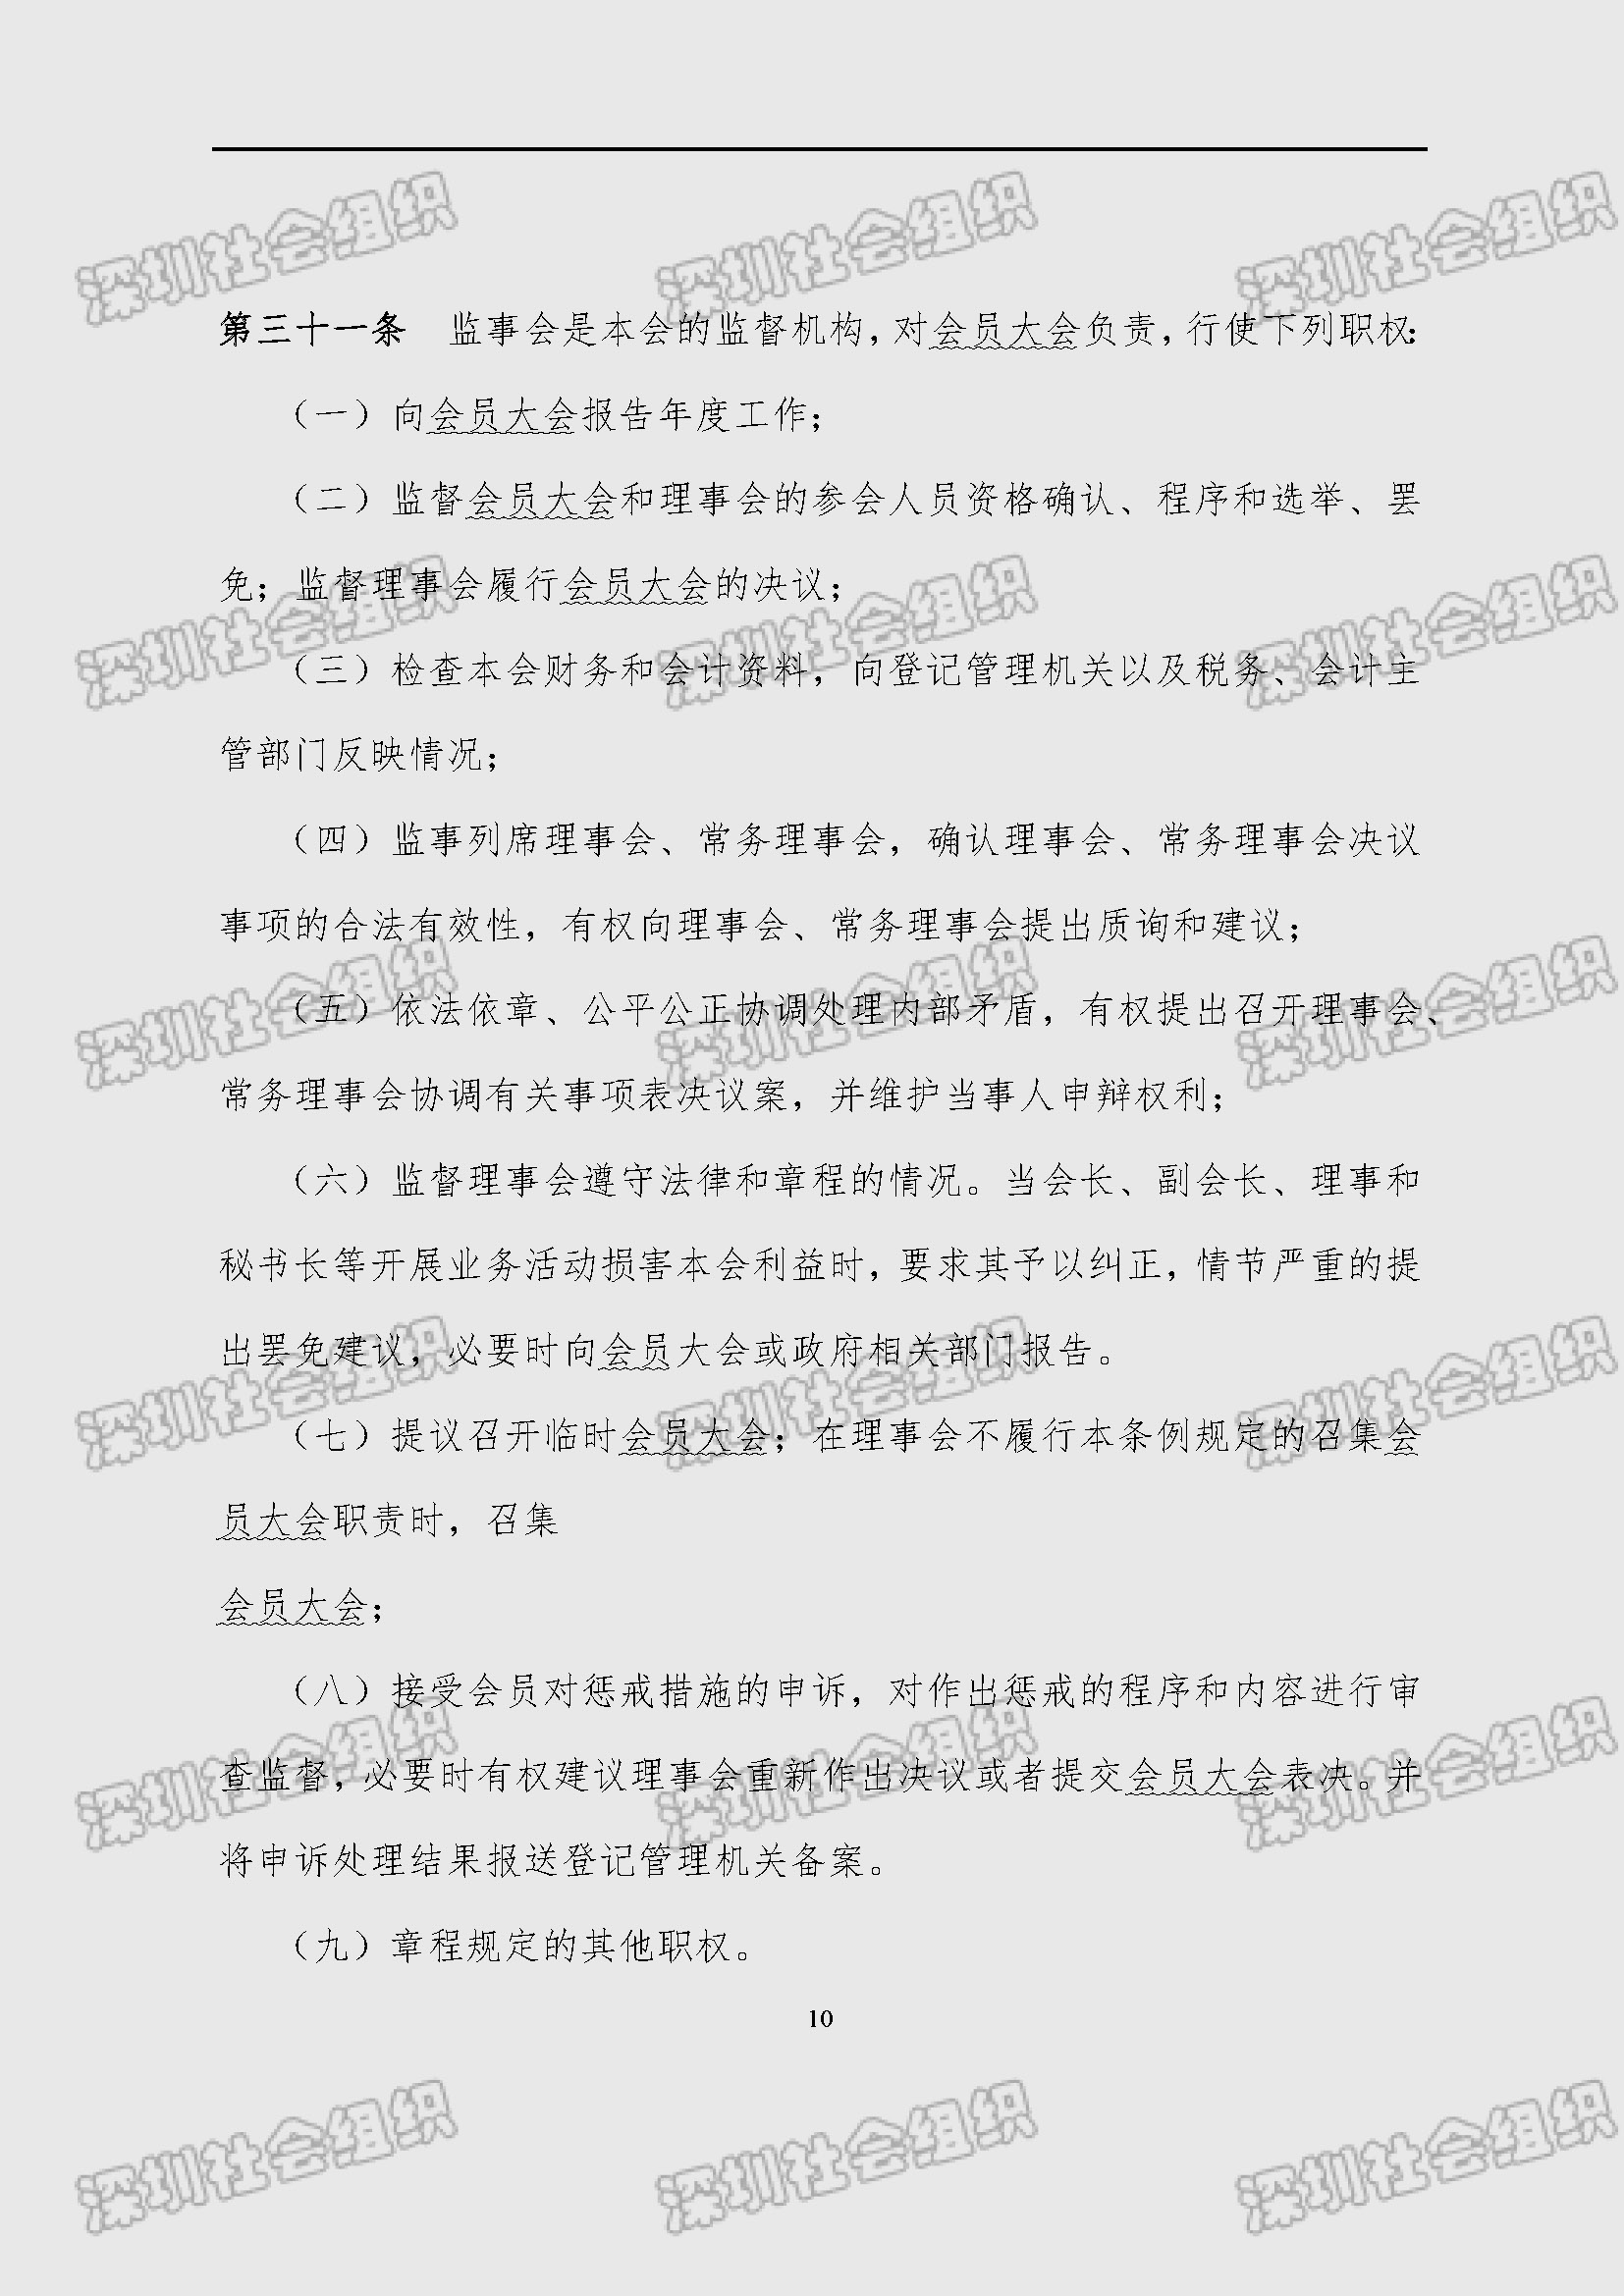 深圳市新材料行业协会章程_页面_10.jpg